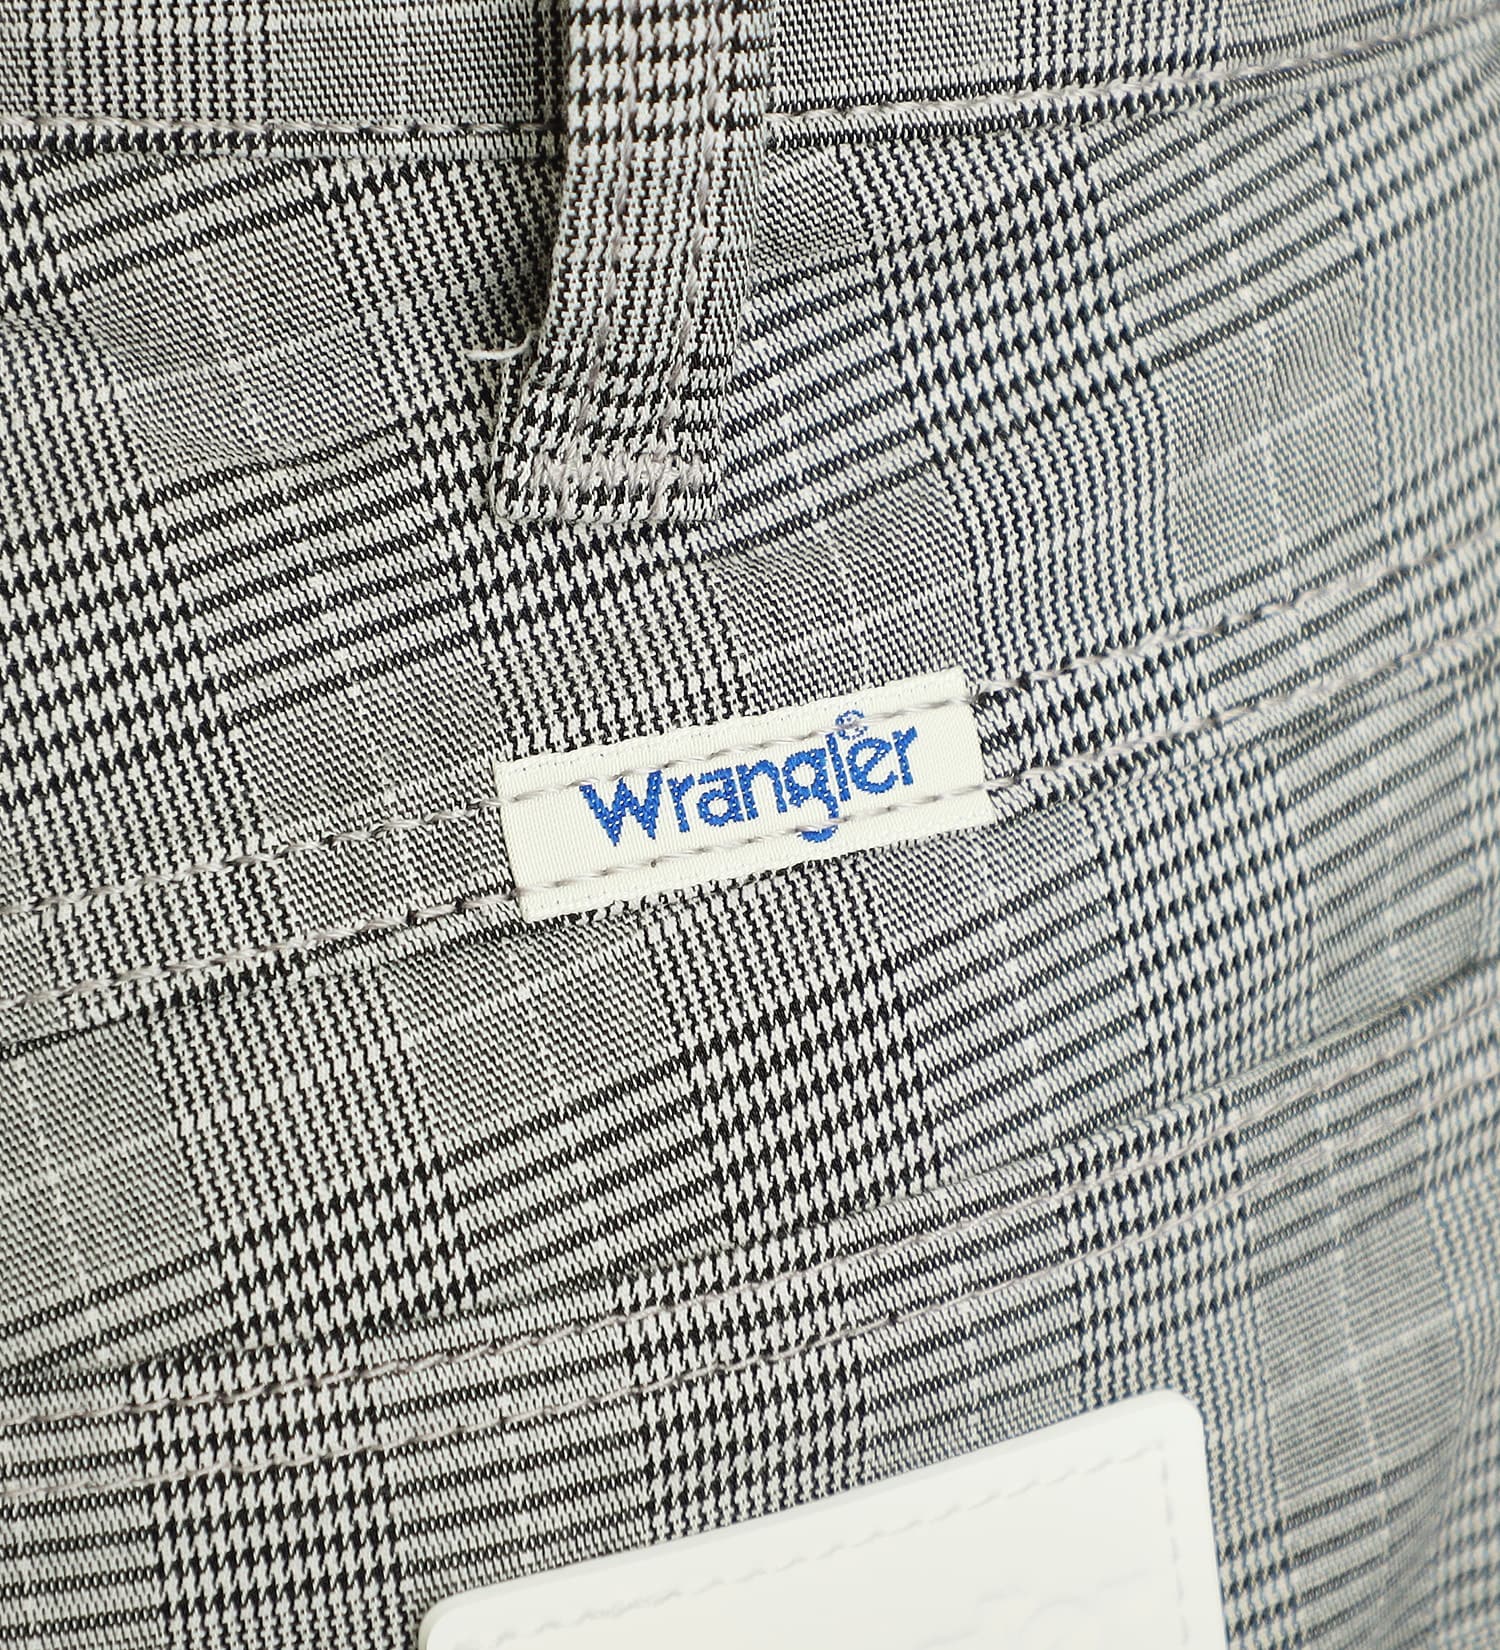 Wrangler(ラングラー)の【GW SALE】【涼・COOL】ドライタッチストレートパンツ|パンツ/パンツ/メンズ|チェック